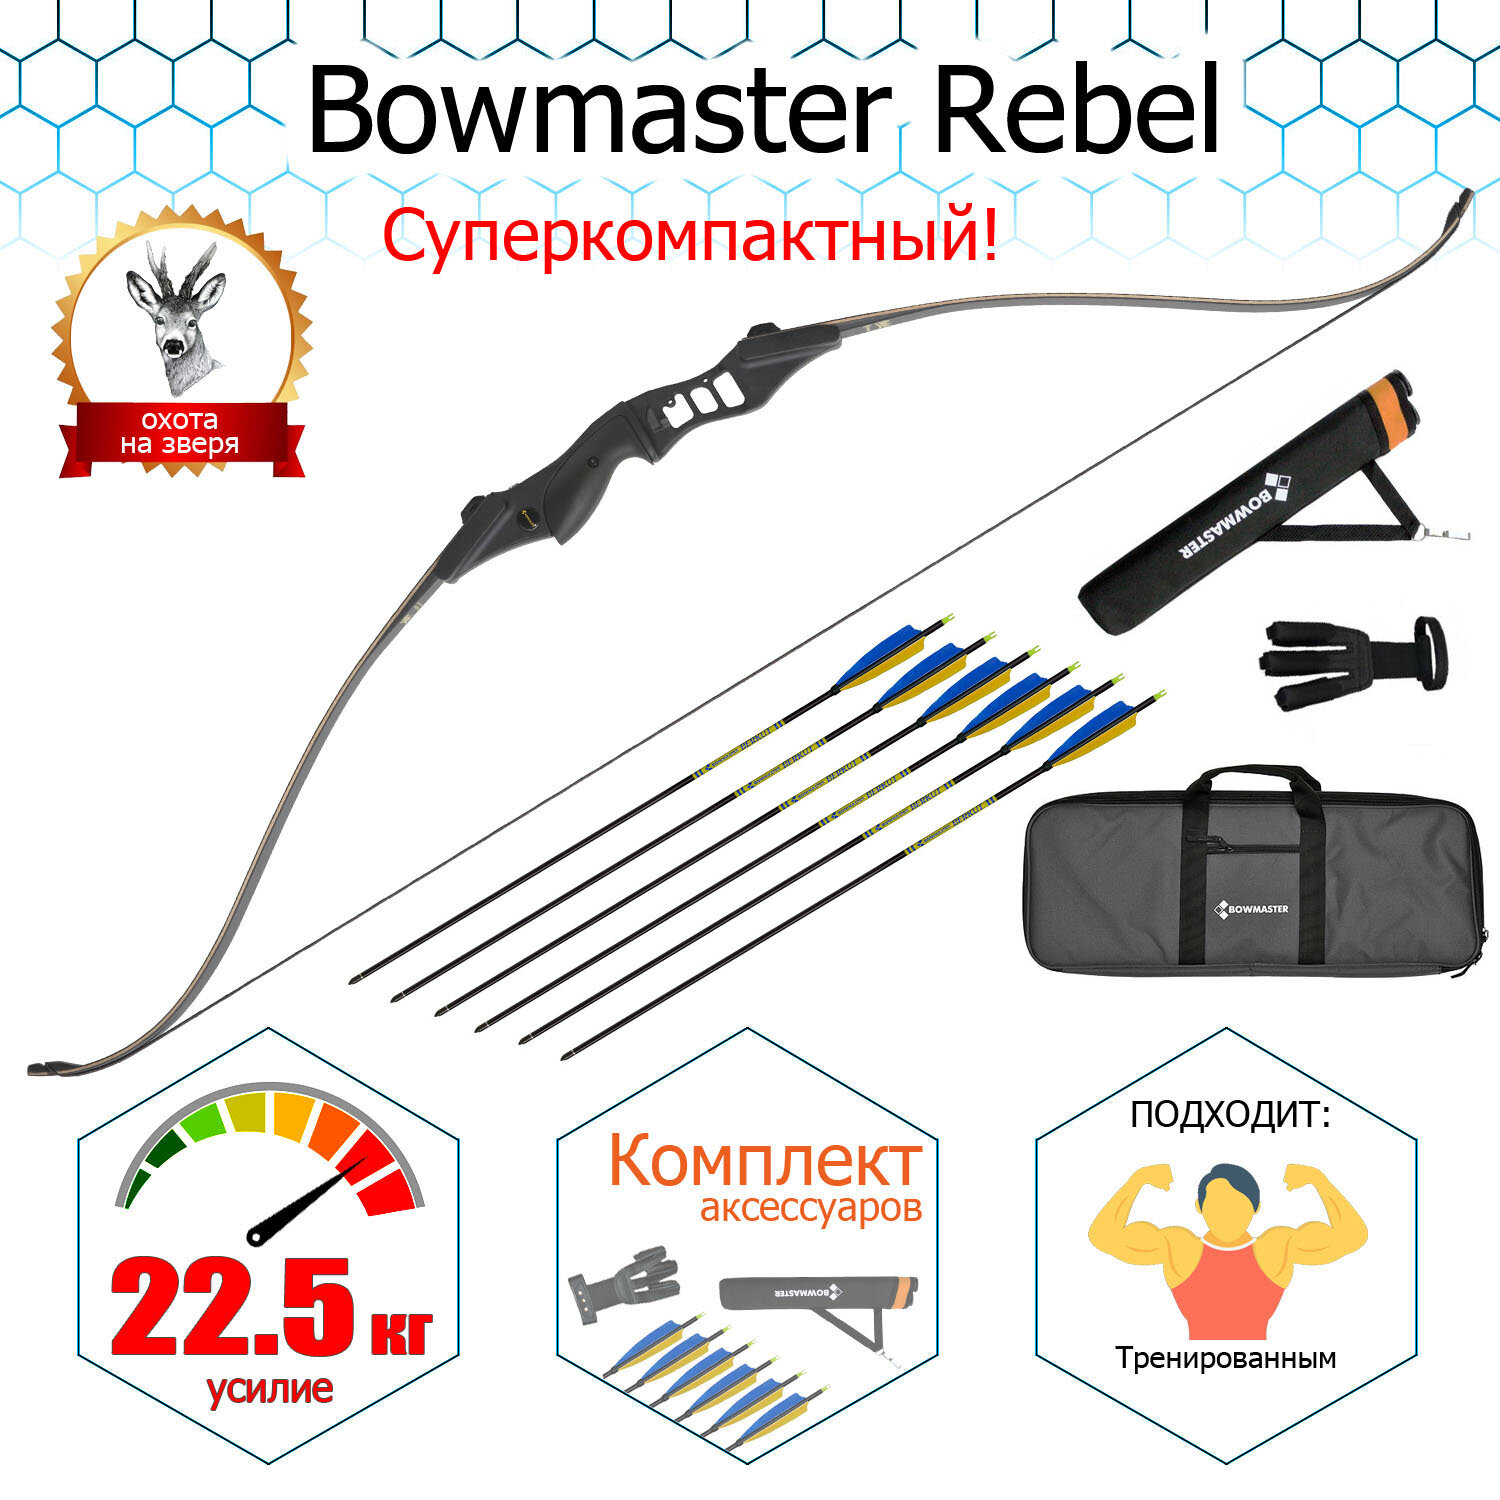 Традиционный лук для лука Bowmaster Rebel 56/50 Rh в комплектации